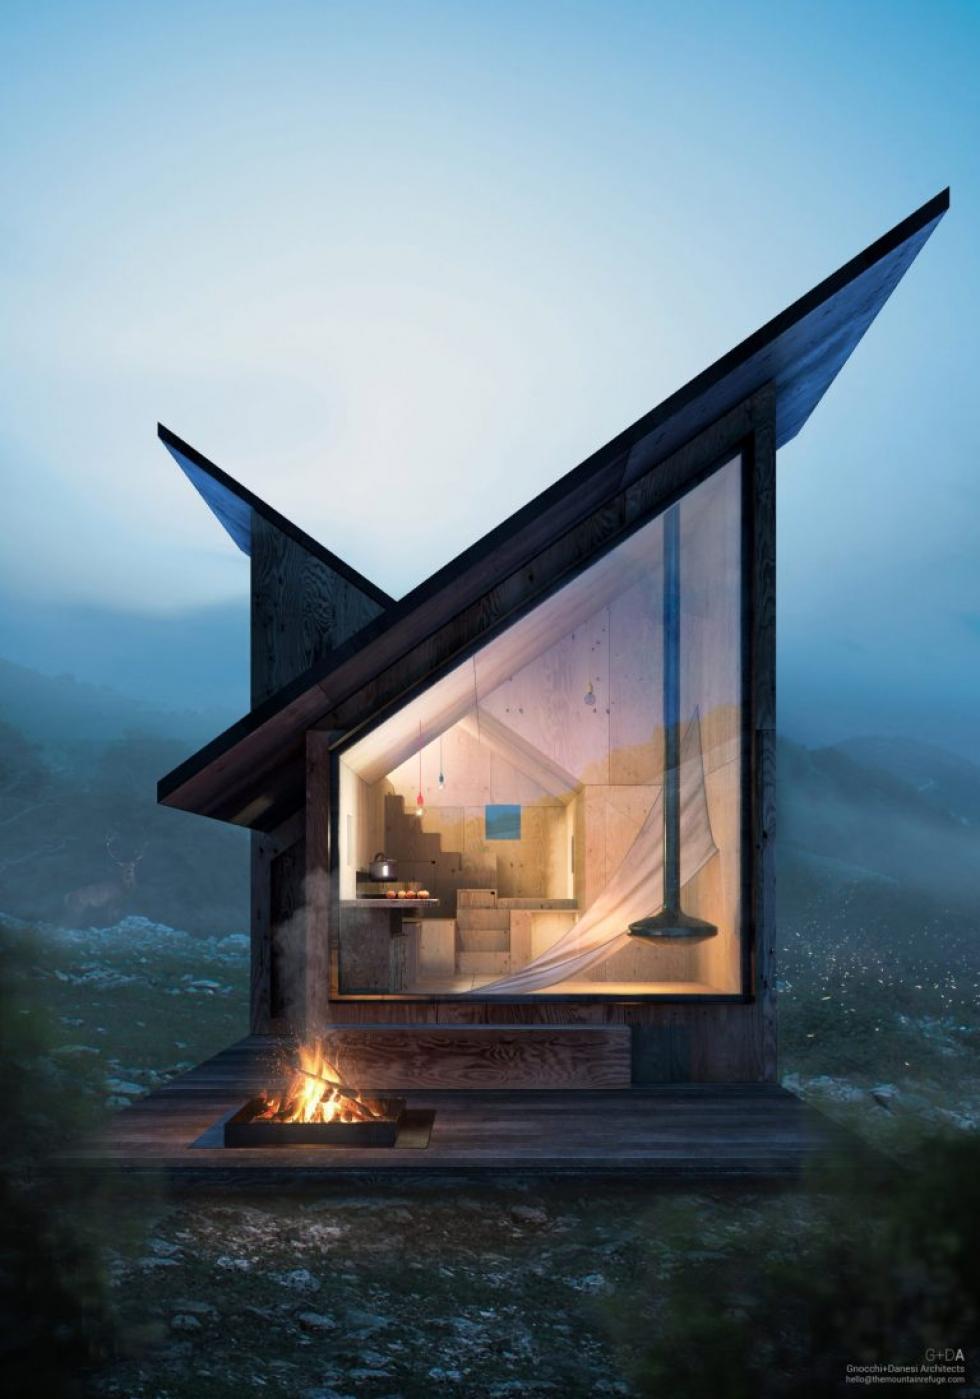 A Mountain Refuge egy nagyon modern moduláris kunyhó, amely bárhol felépíthető